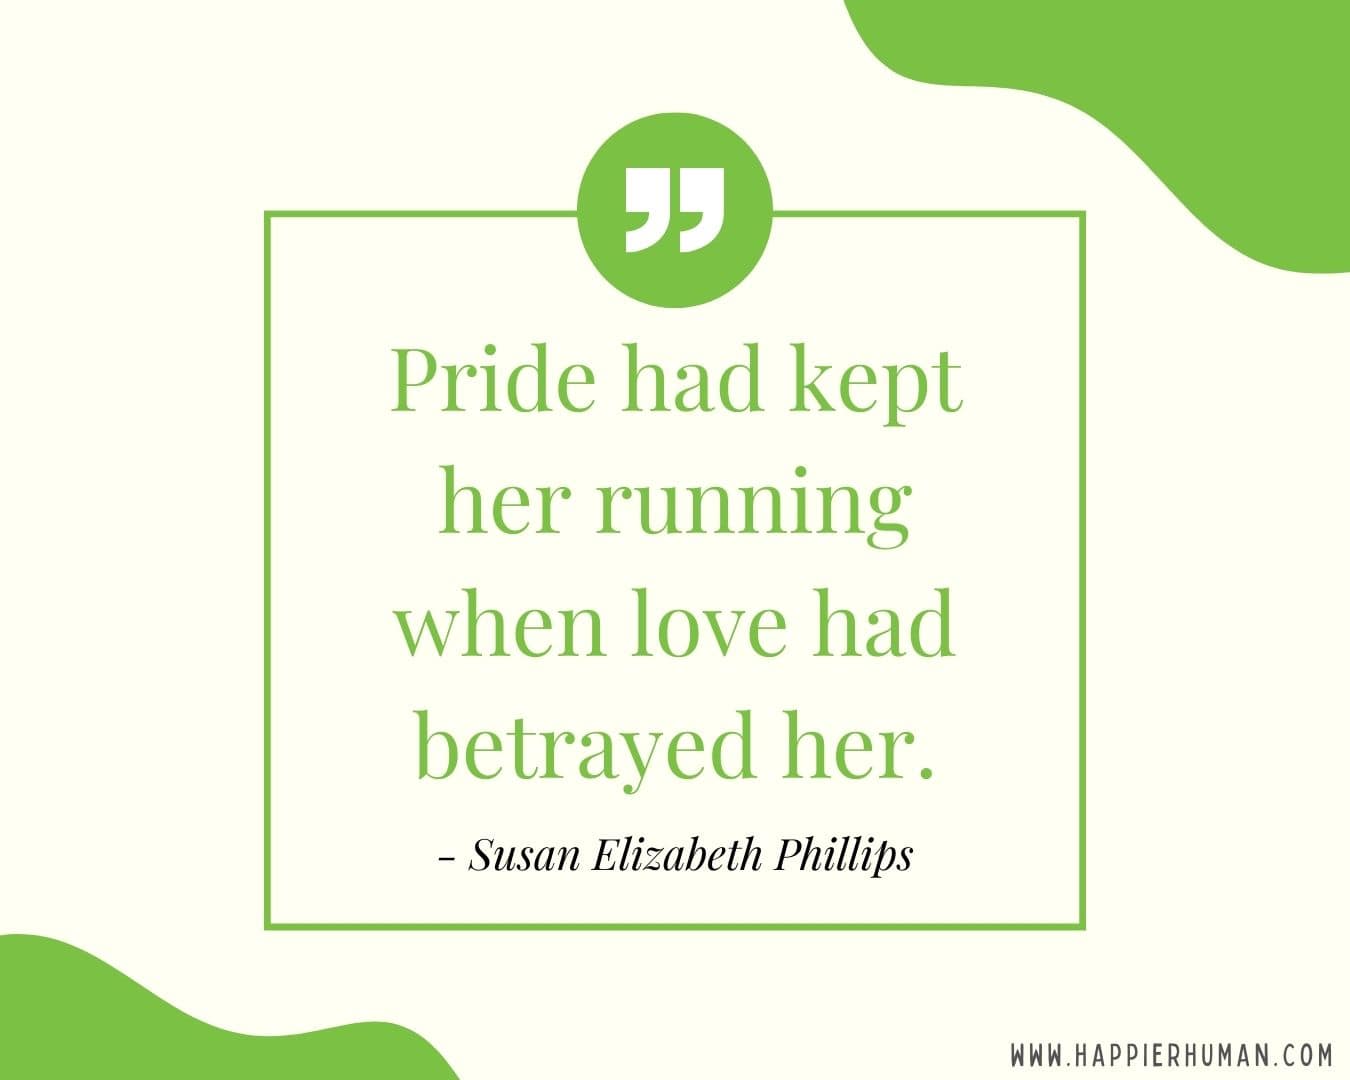 Broken Trust Quotes - “Pride had kept her running when love had betrayed her.” - Susan Elizabeth Phillips